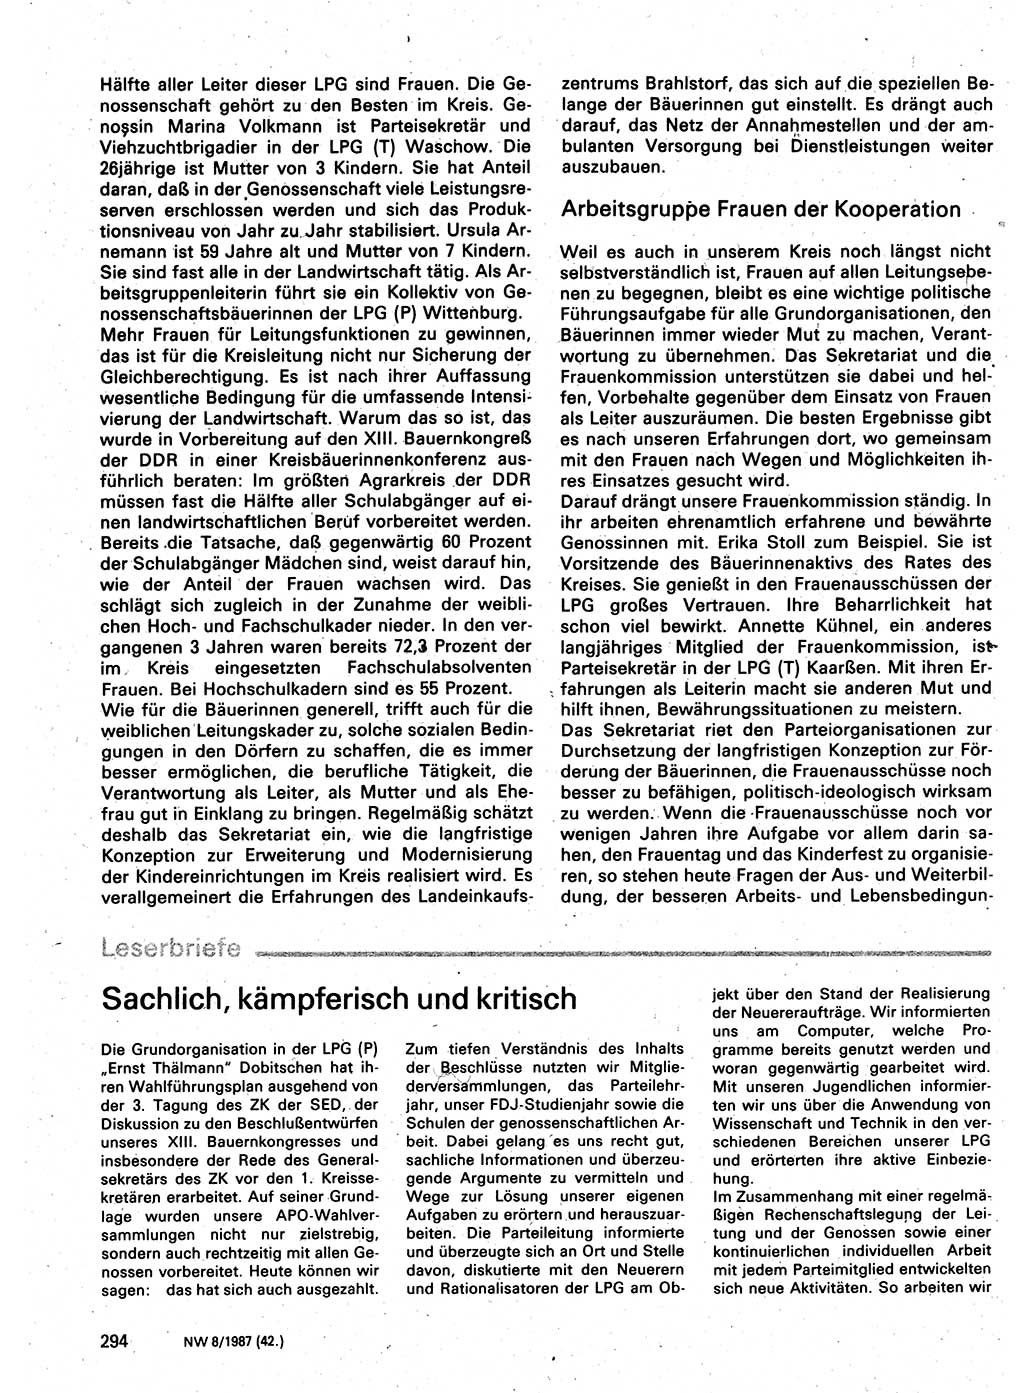 Neuer Weg (NW), Organ des Zentralkomitees (ZK) der SED (Sozialistische Einheitspartei Deutschlands) für Fragen des Parteilebens, 42. Jahrgang [Deutsche Demokratische Republik (DDR)] 1987, Seite 294 (NW ZK SED DDR 1987, S. 294)